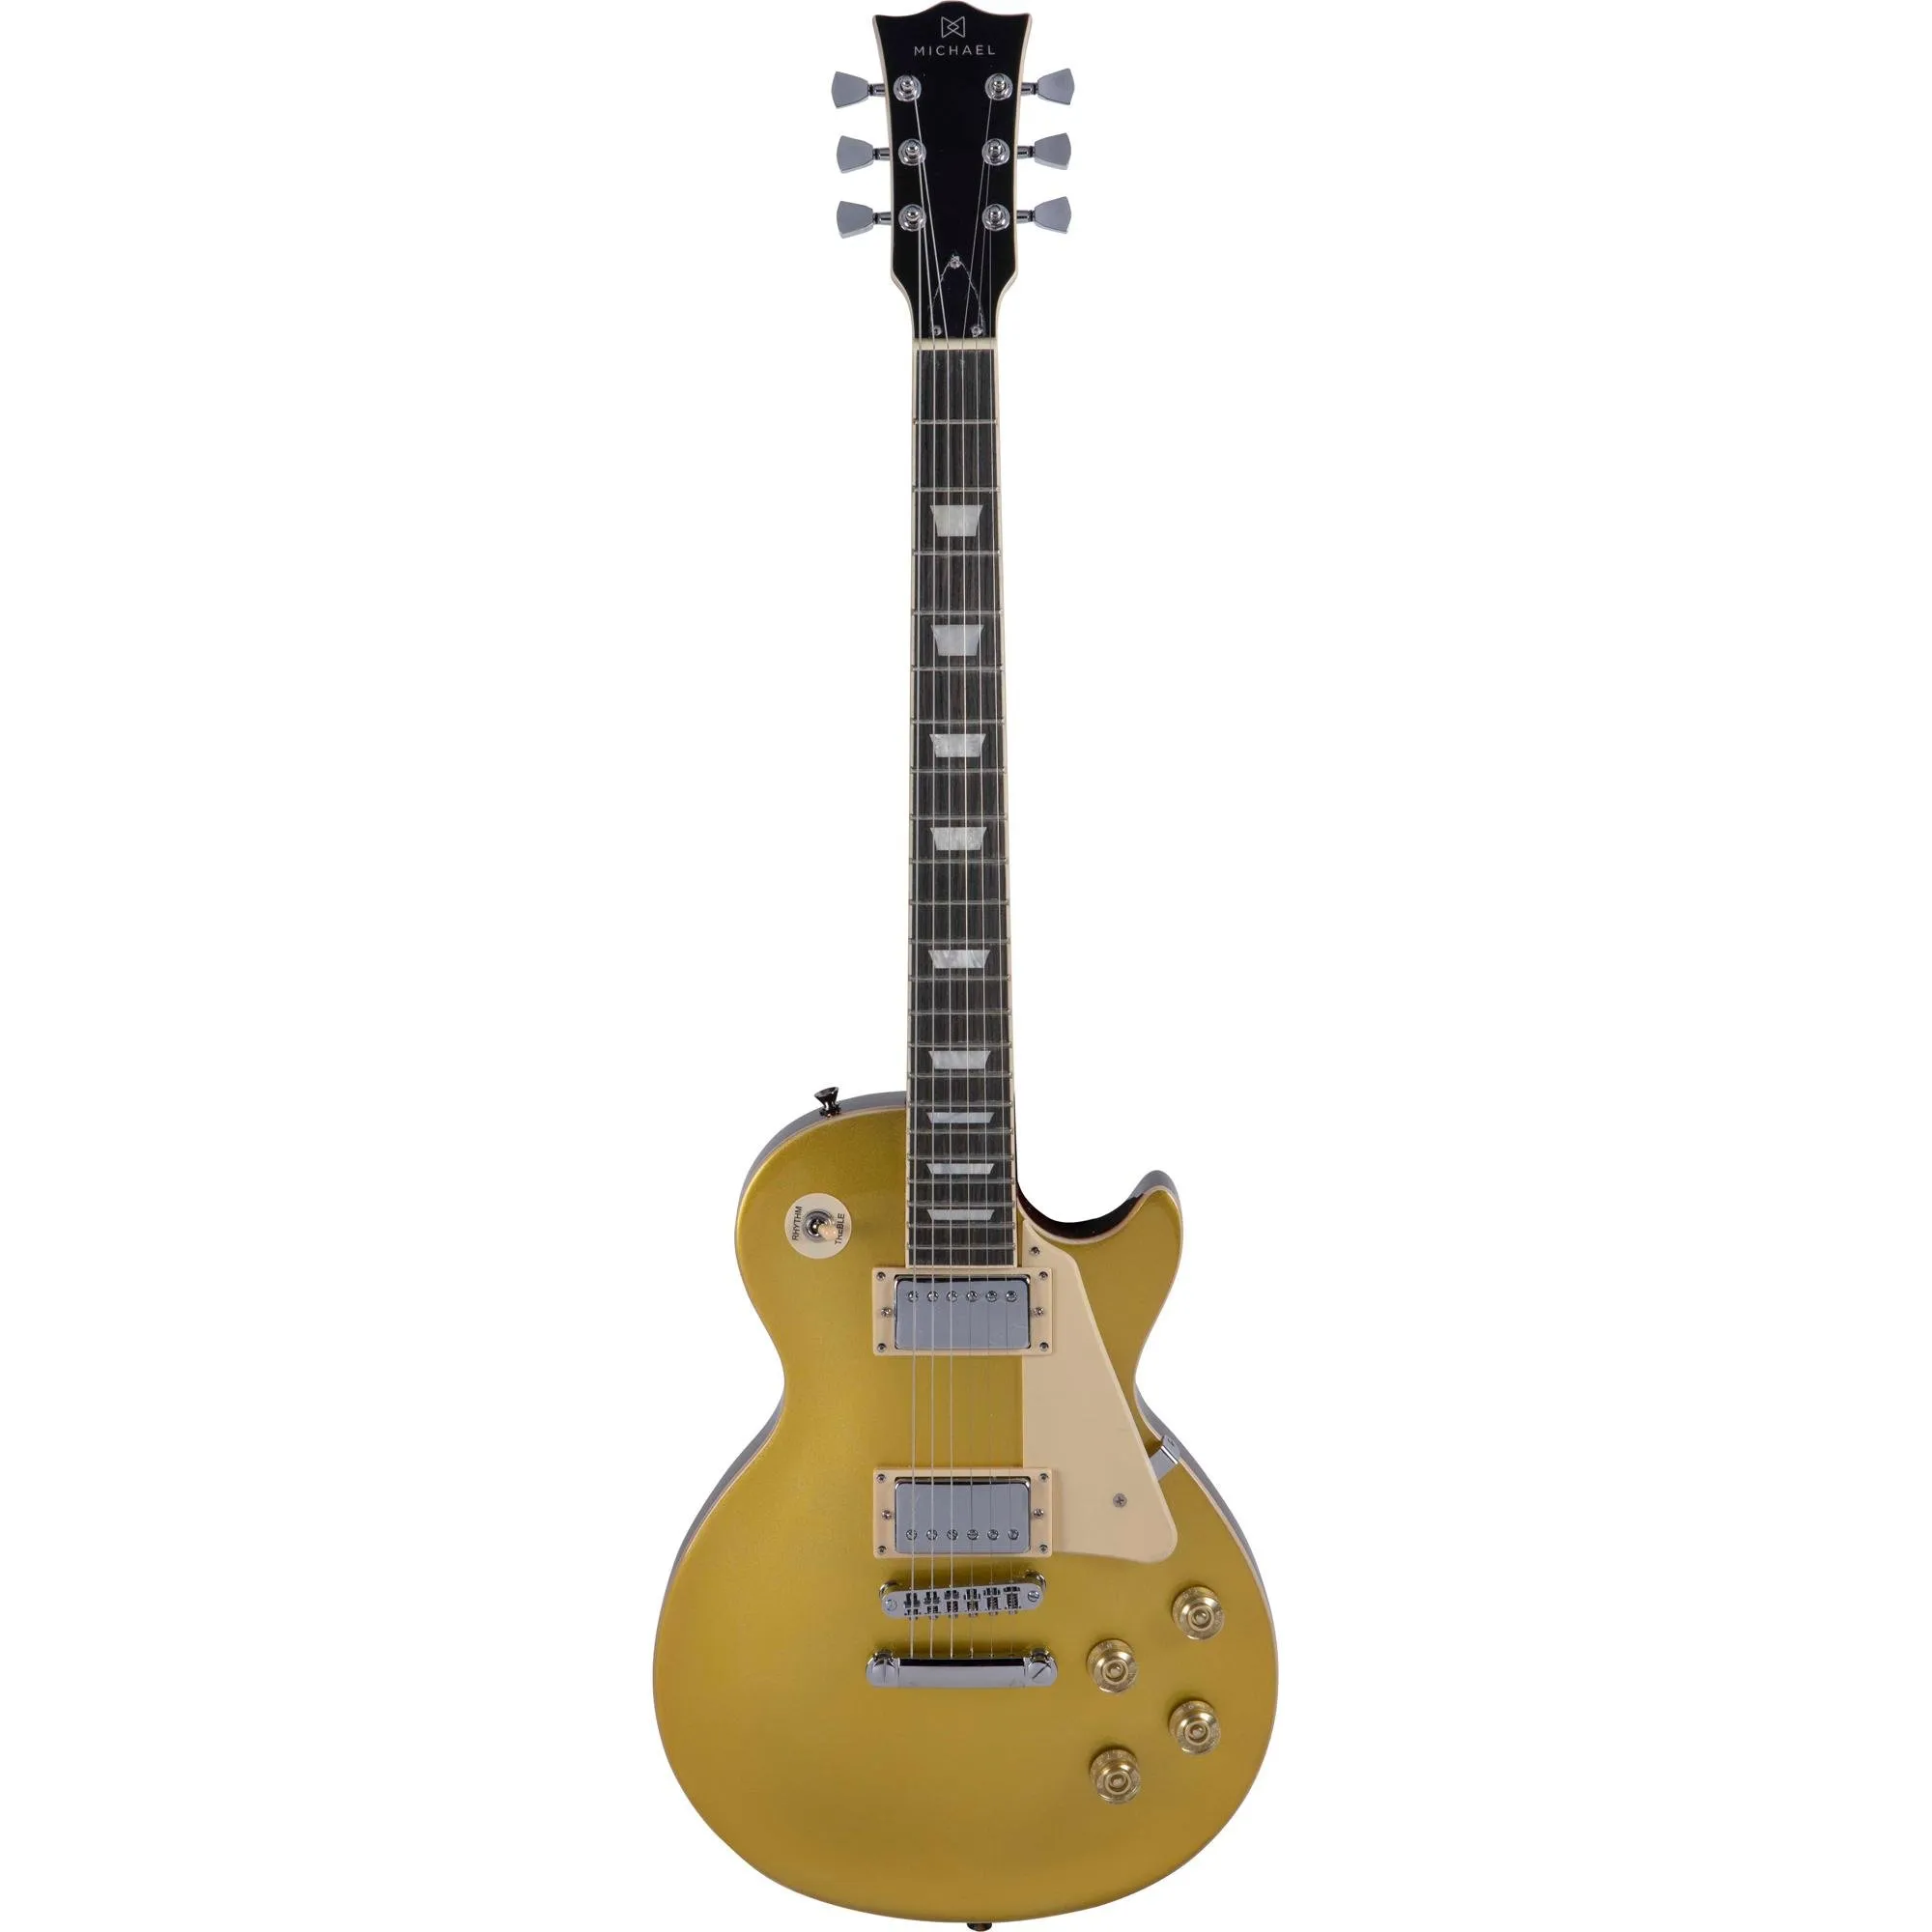 Guitarra Les Paul Michael GM730N Gold por 1.699,99 à vista no boleto/pix ou parcele em até 12x sem juros. Compre na loja Mundomax!